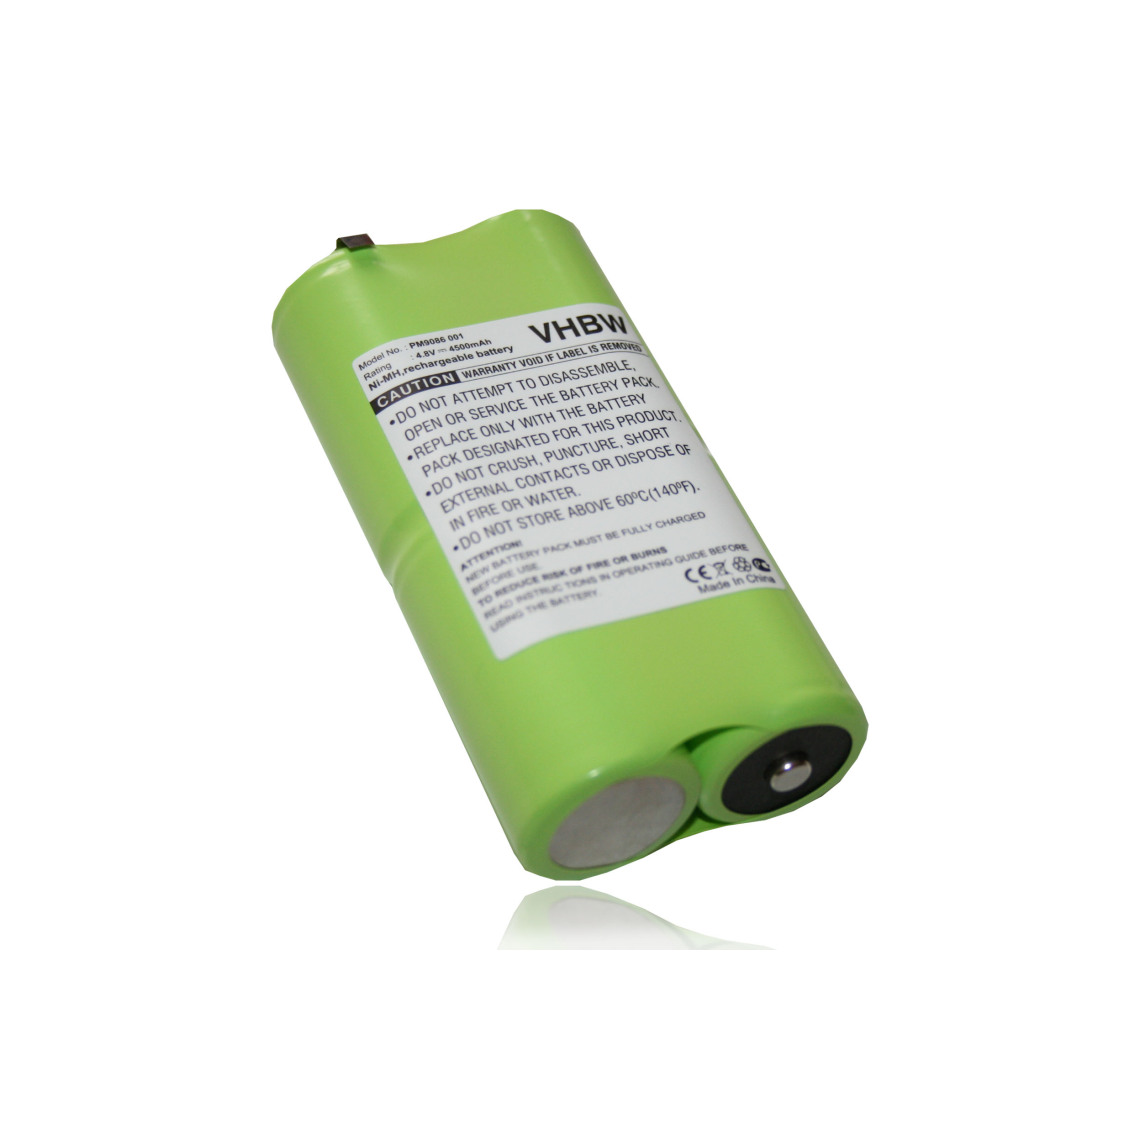 Vhbw - vhbw Batterie remplace AS30006, B10858 pour outil de mesure (4500mAh 4,8V NiMH) - Piles rechargeables